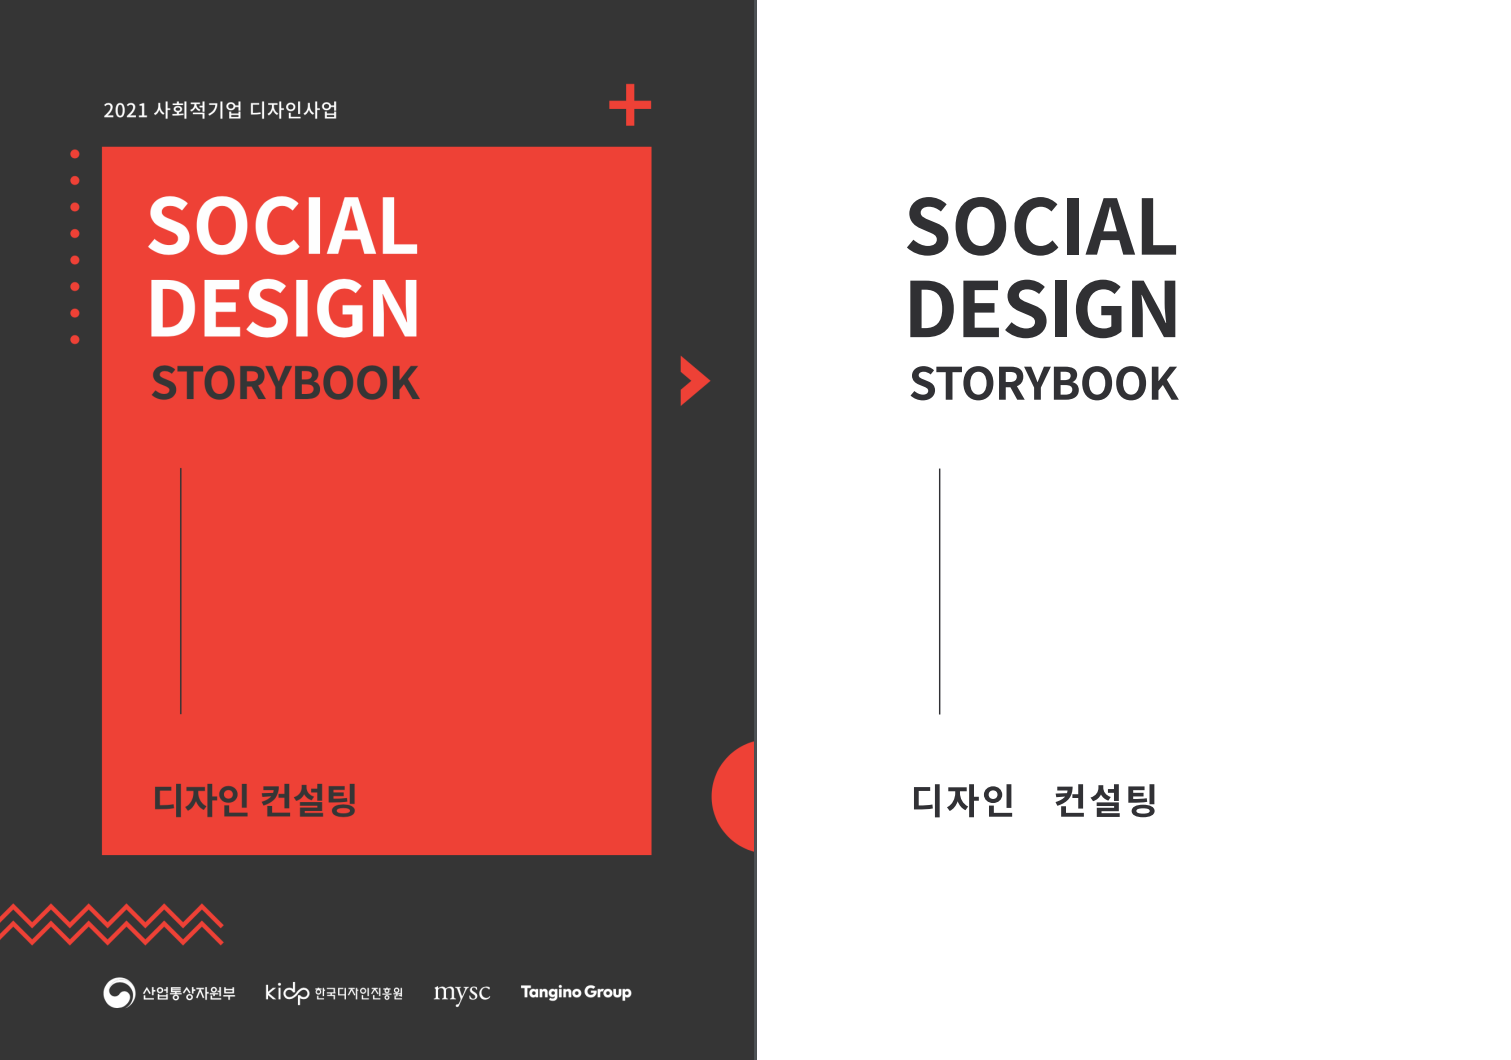 2021 사회적기업 디자인사업_디자인 컨설팅 - 한국디자인진흥원, 2021